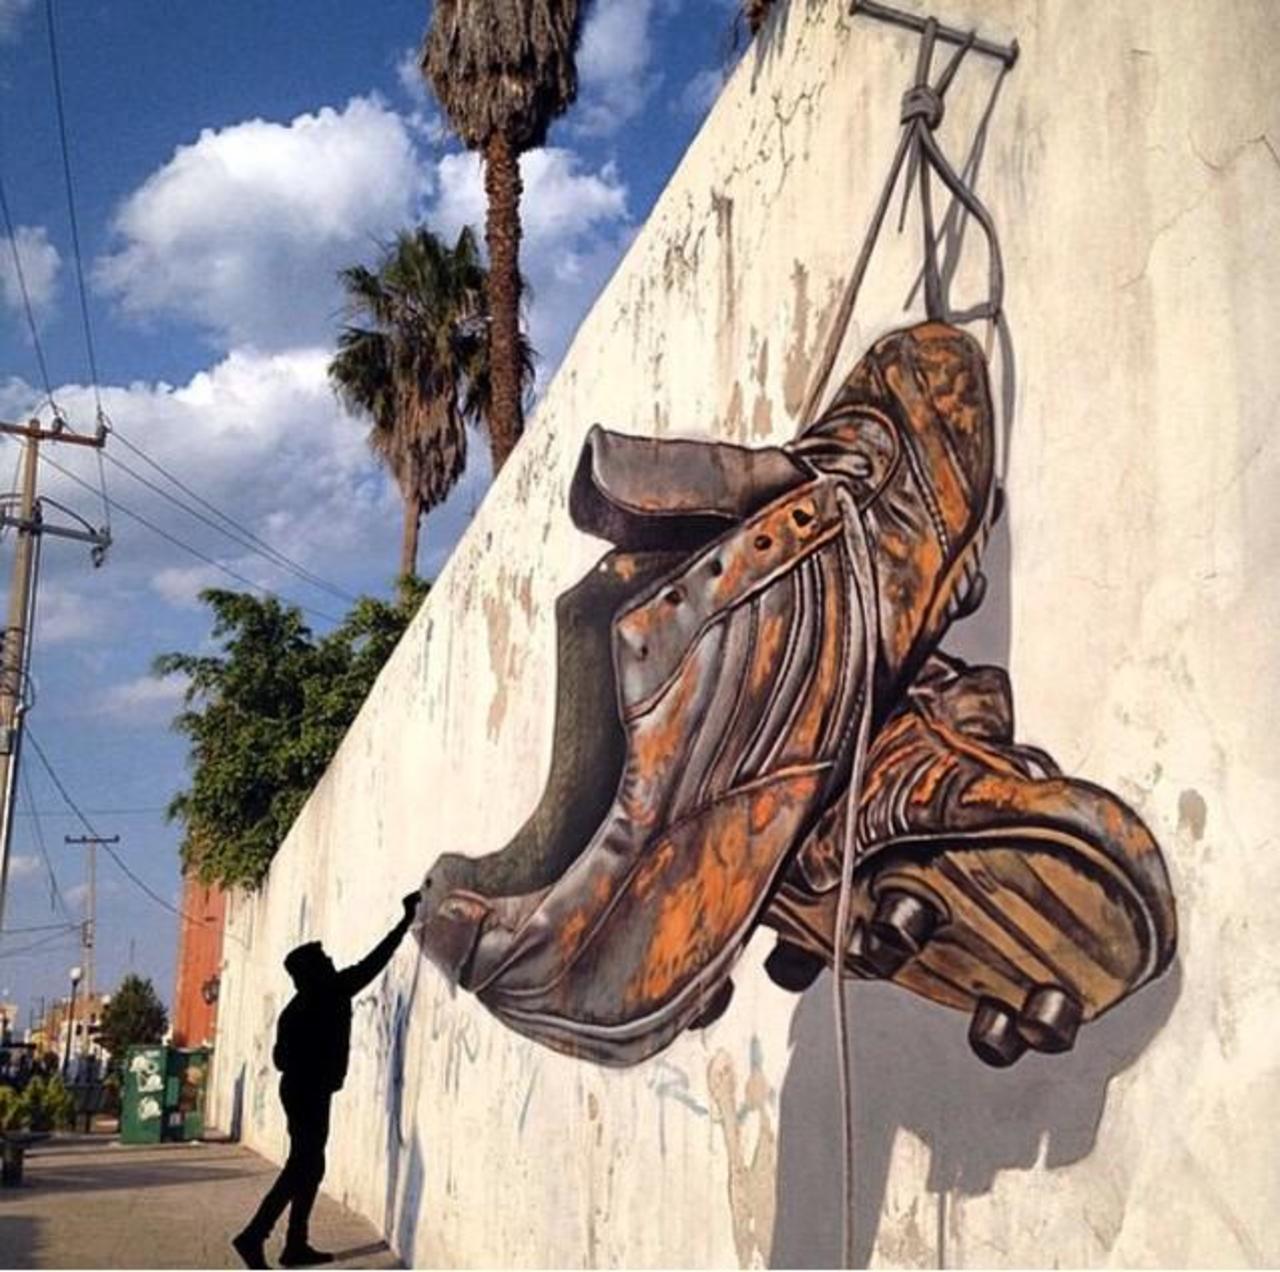 RT "@GoogleStreetArt: Awesome anamorphic 3D Street Art by Juandres Vera 

#art #graffiti #mural #streetart http://t.co/xrlk6Hzh9d"